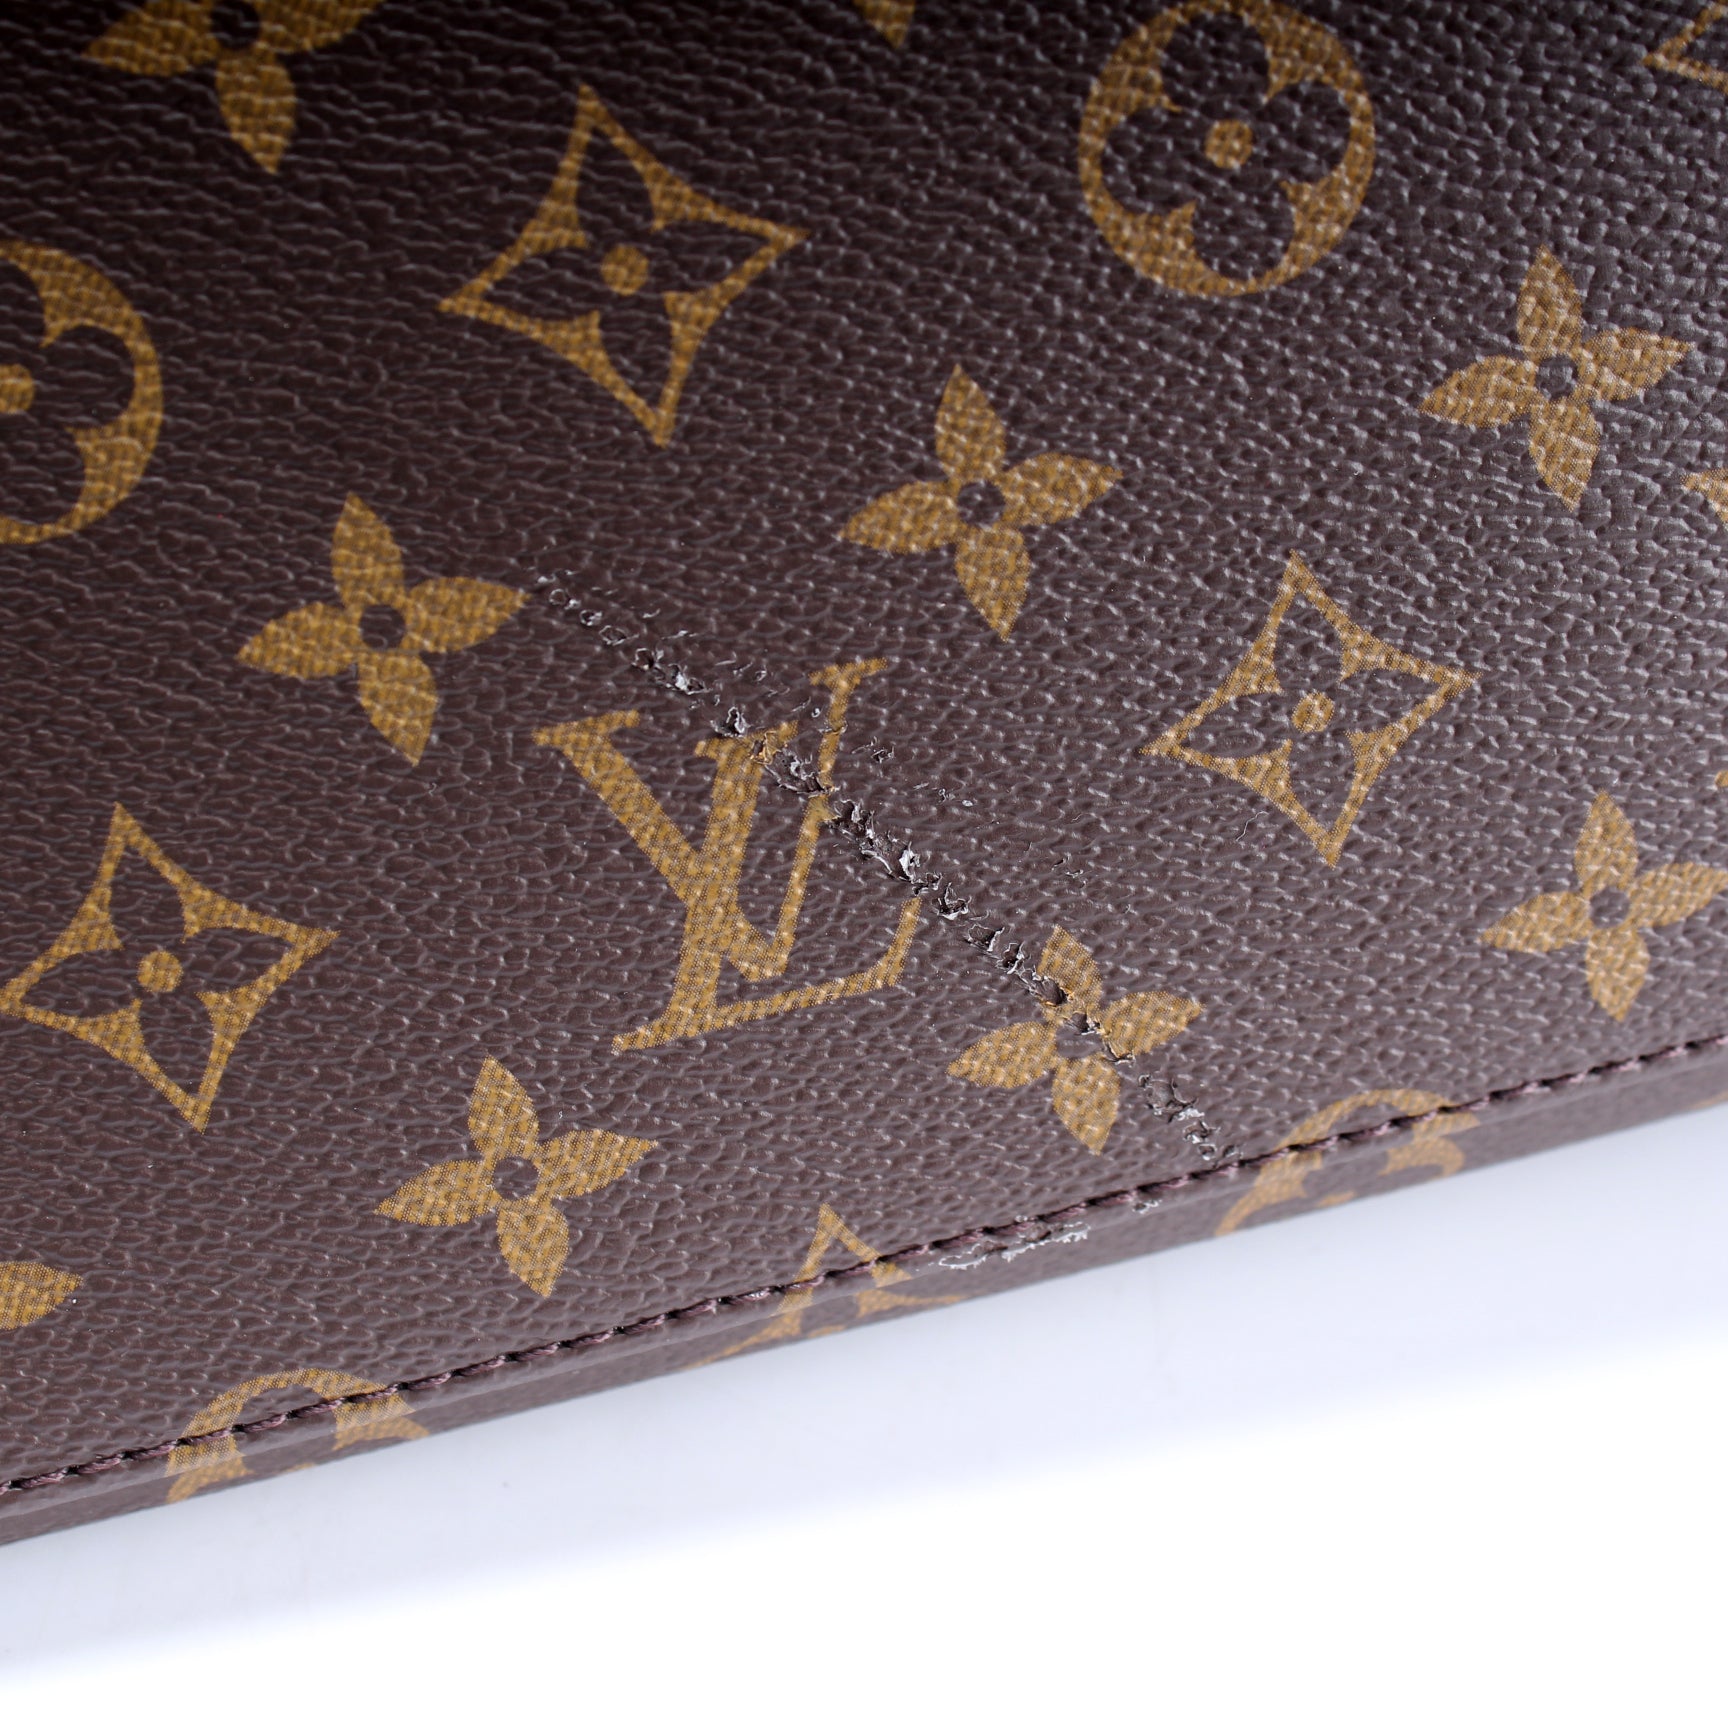 Louis Vuitton Grand Palais Monogram Canvas Shoulder Bag